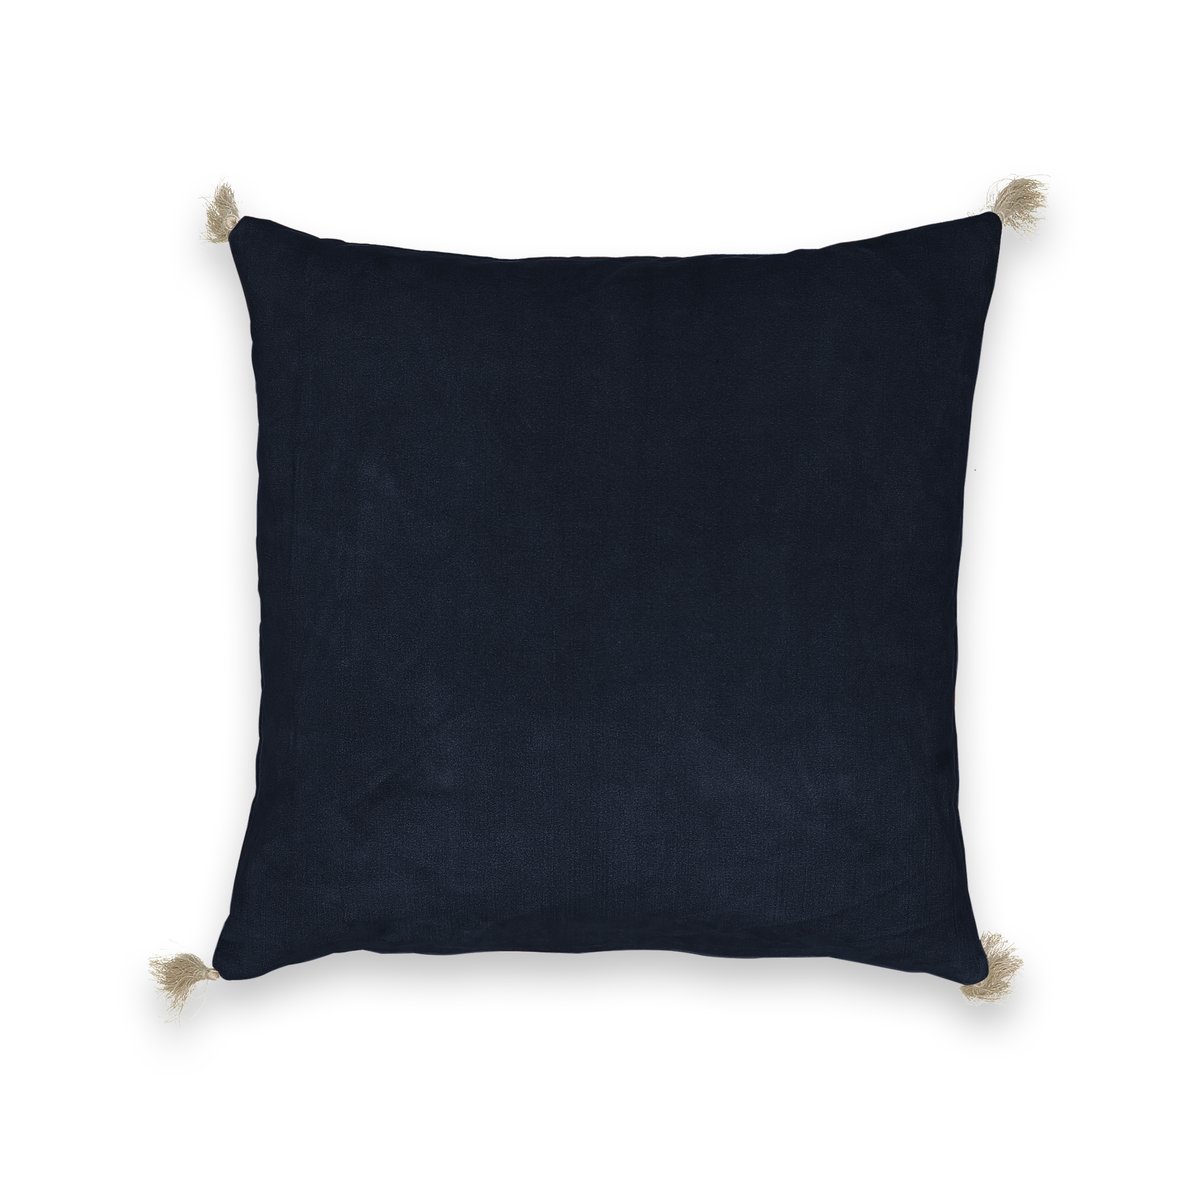 Чехол на подушку велюровый Cacolet 50 x 30 см синий чехол на подушку стеганый из 100 хлопка milano 50 x 30 см зеленый